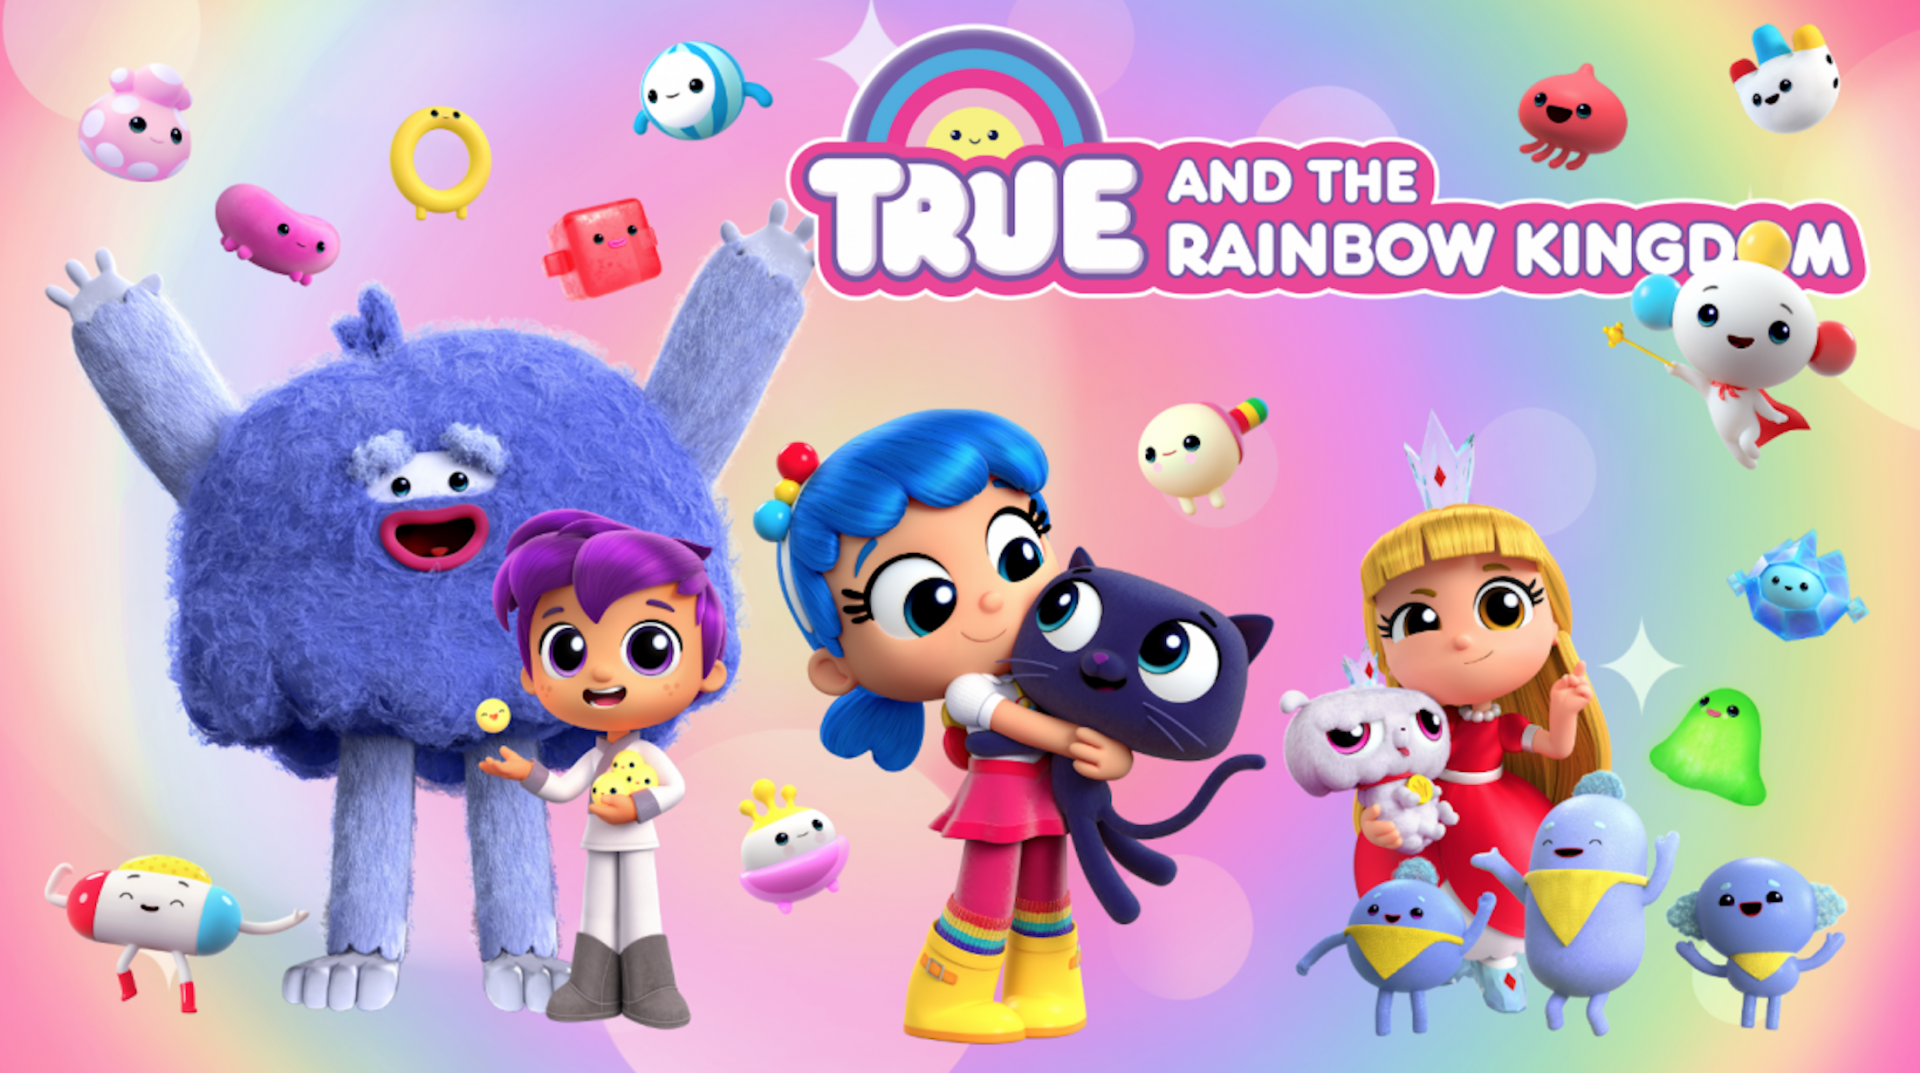 小真与彩虹王国 英文版 第2季《True and the Rainbow Kingdom》在线观看